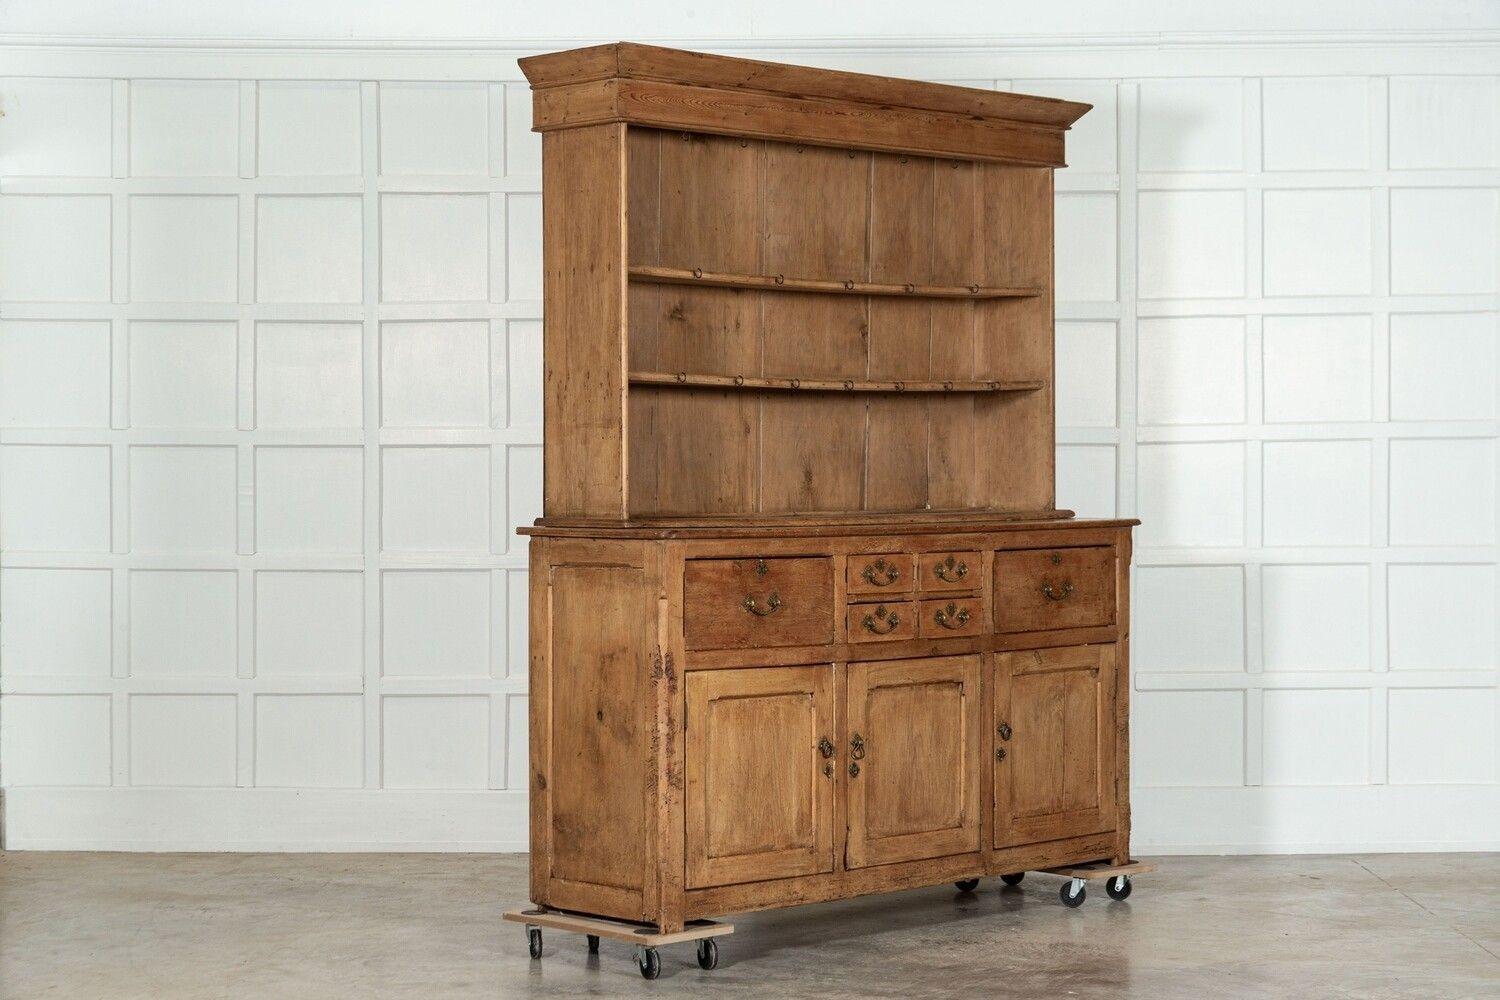 circa 1850
Large 19thC English Pine Dresser
sku 1635
Base W188 x D57 x H100 cm
Top W186 x D39 x H124 cm
Together W188 x D57 x H224 cm